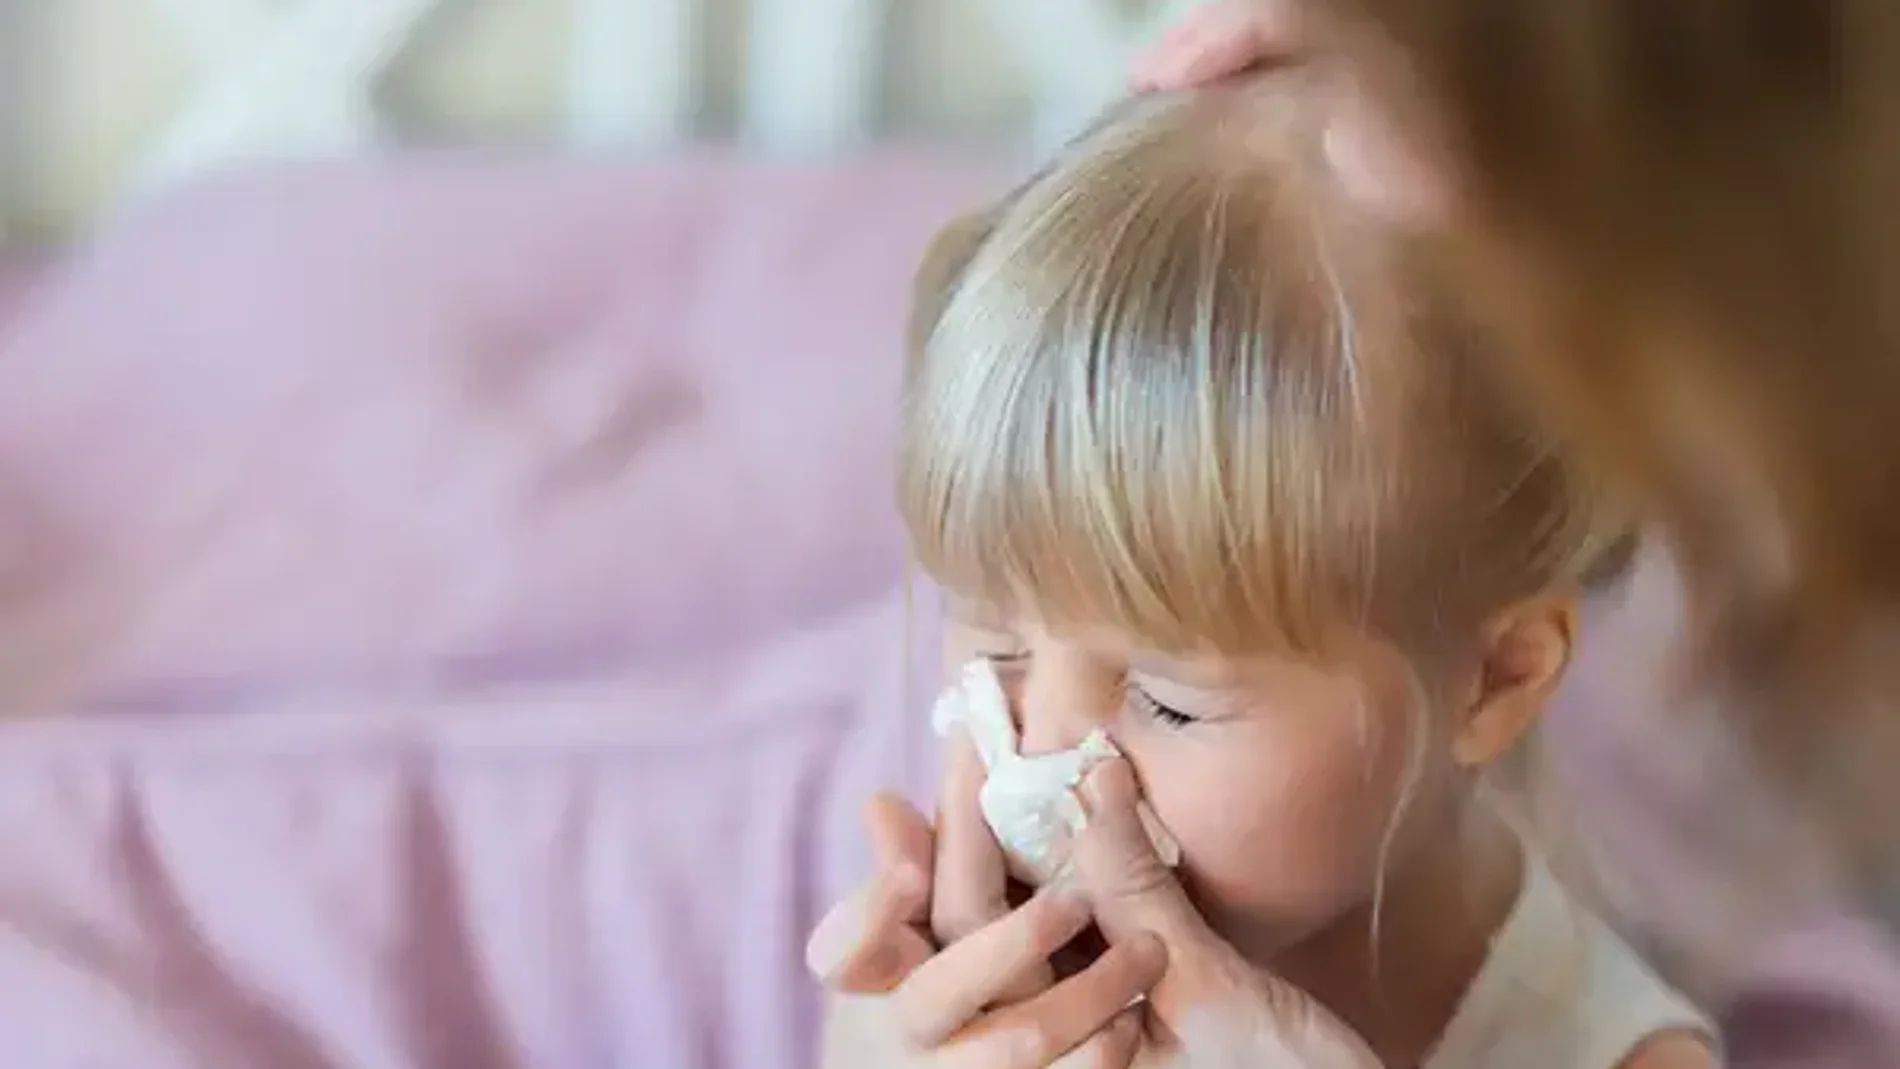 Avisan de un aumento de las consultas de telemedicina por infecciones respiratorias en niños en las últimas semanas